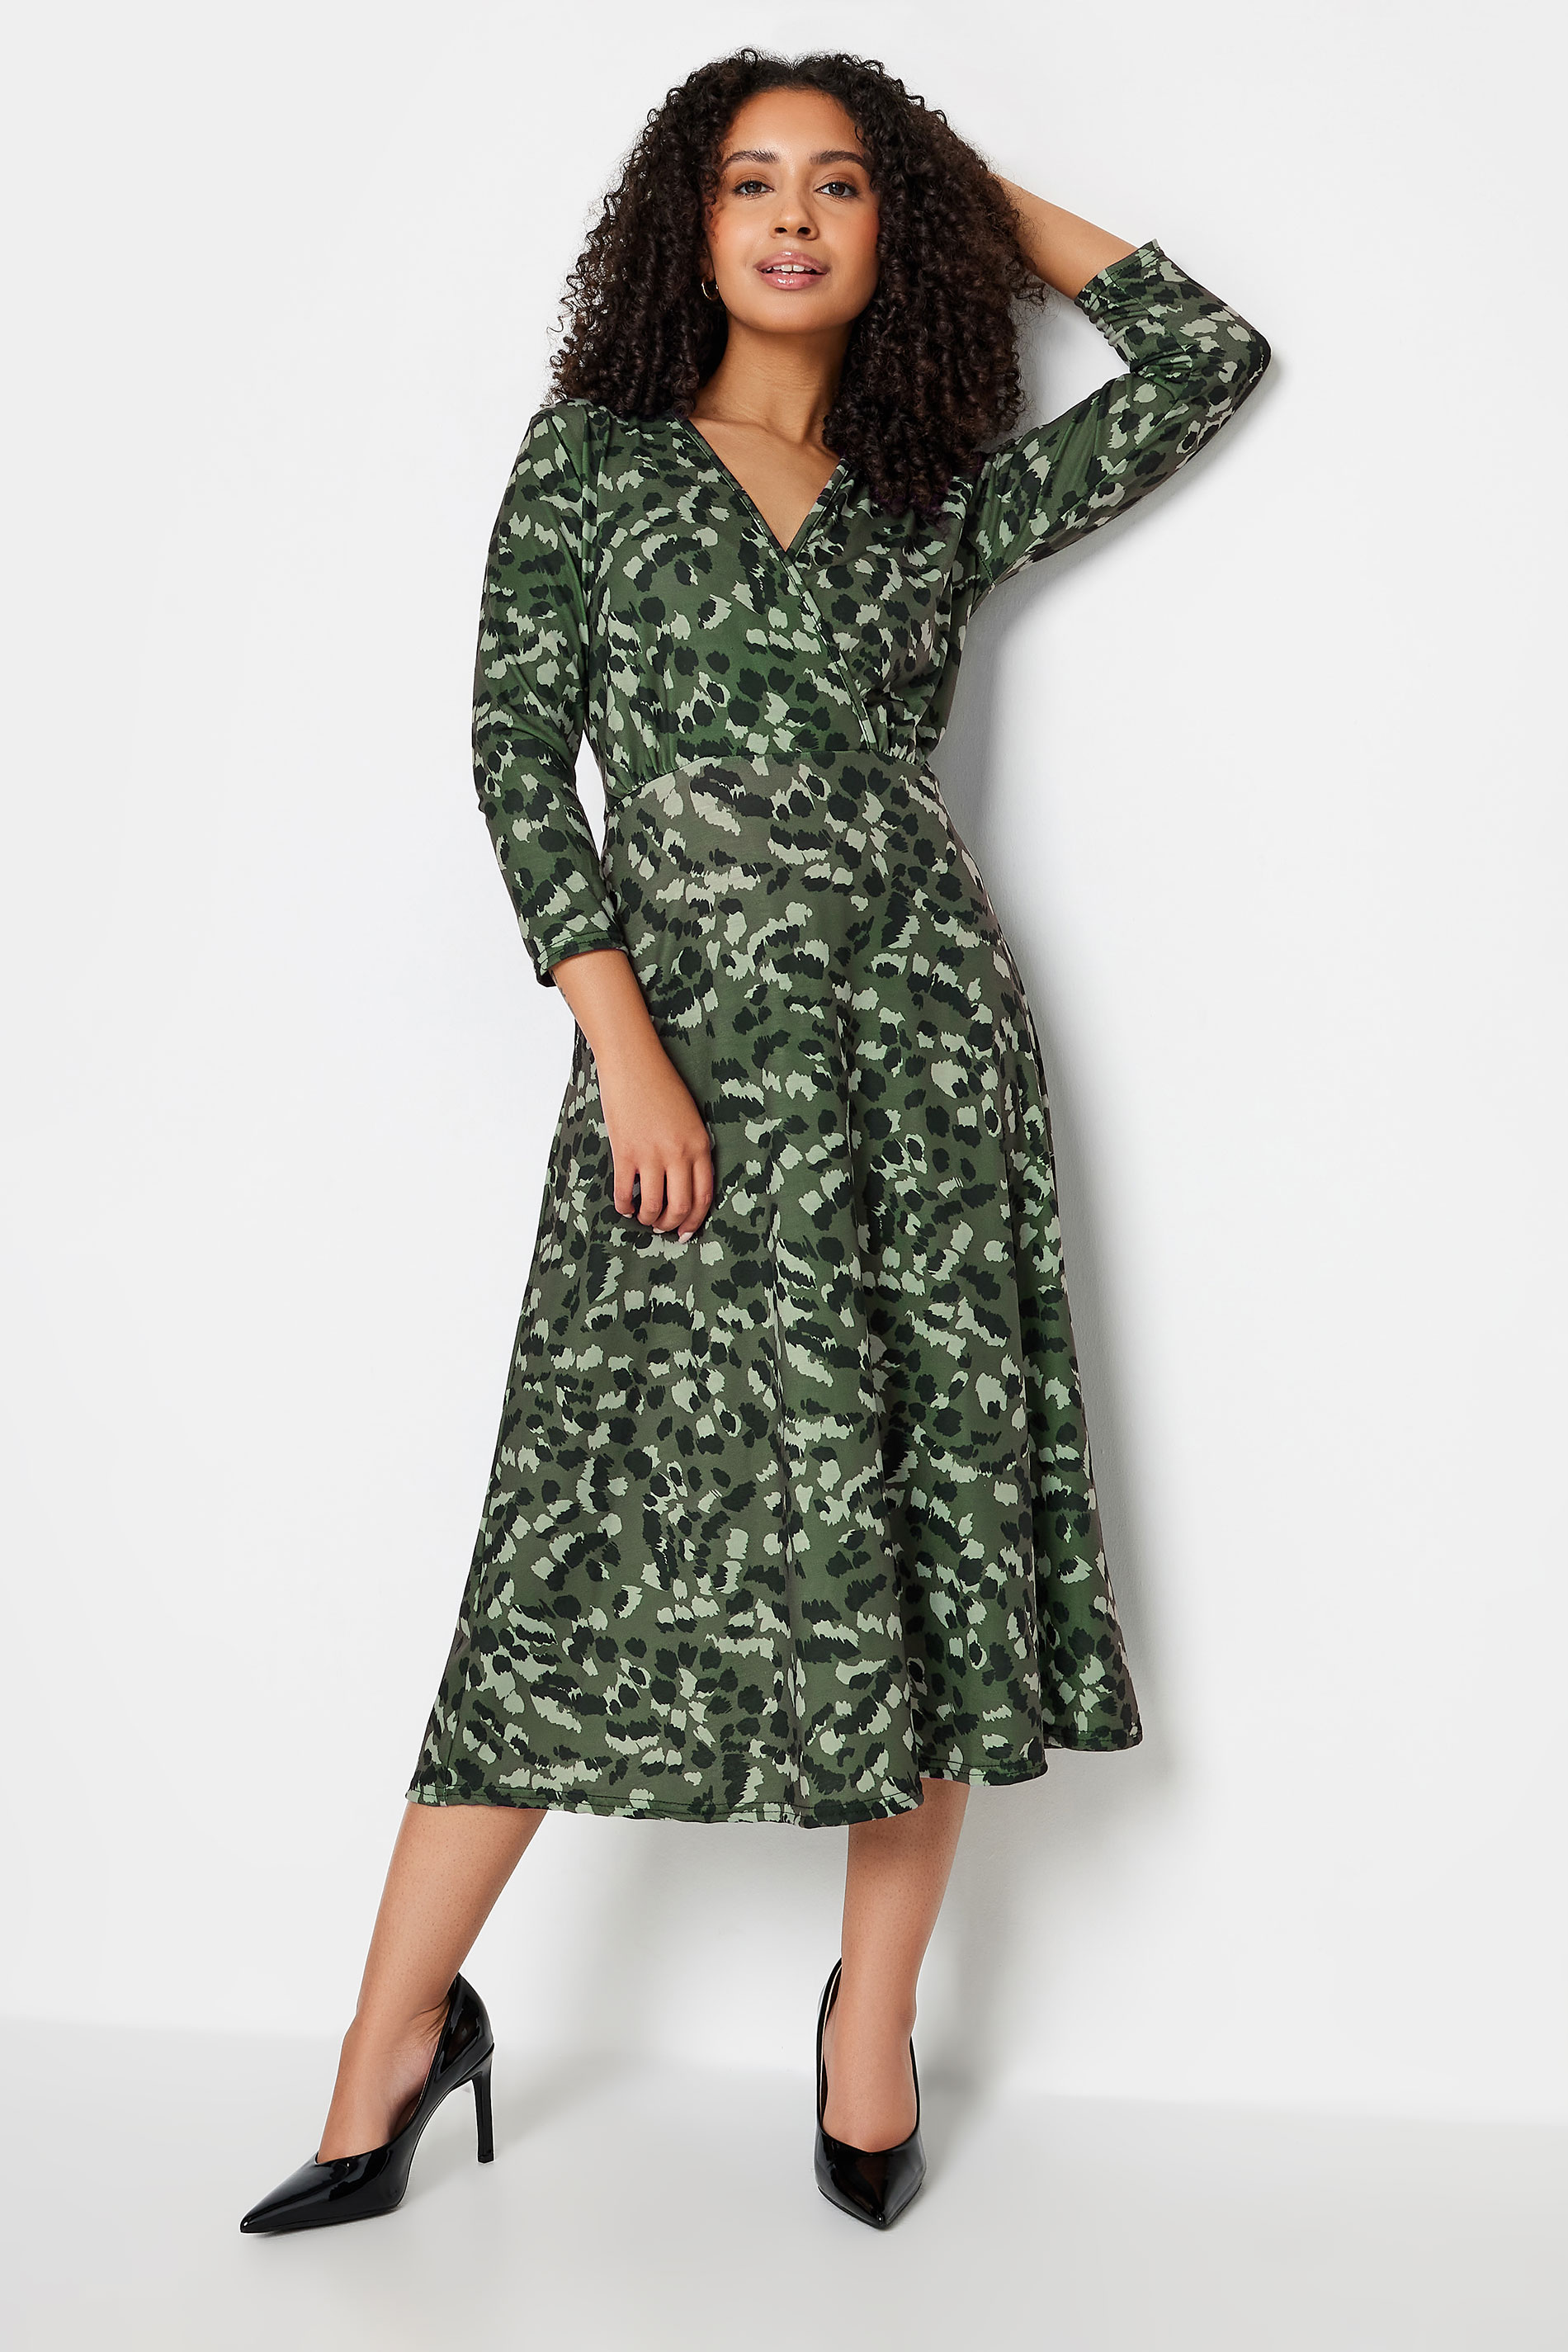 M&Co Petite Green Animal Print Wrap Dress | M&Co  2